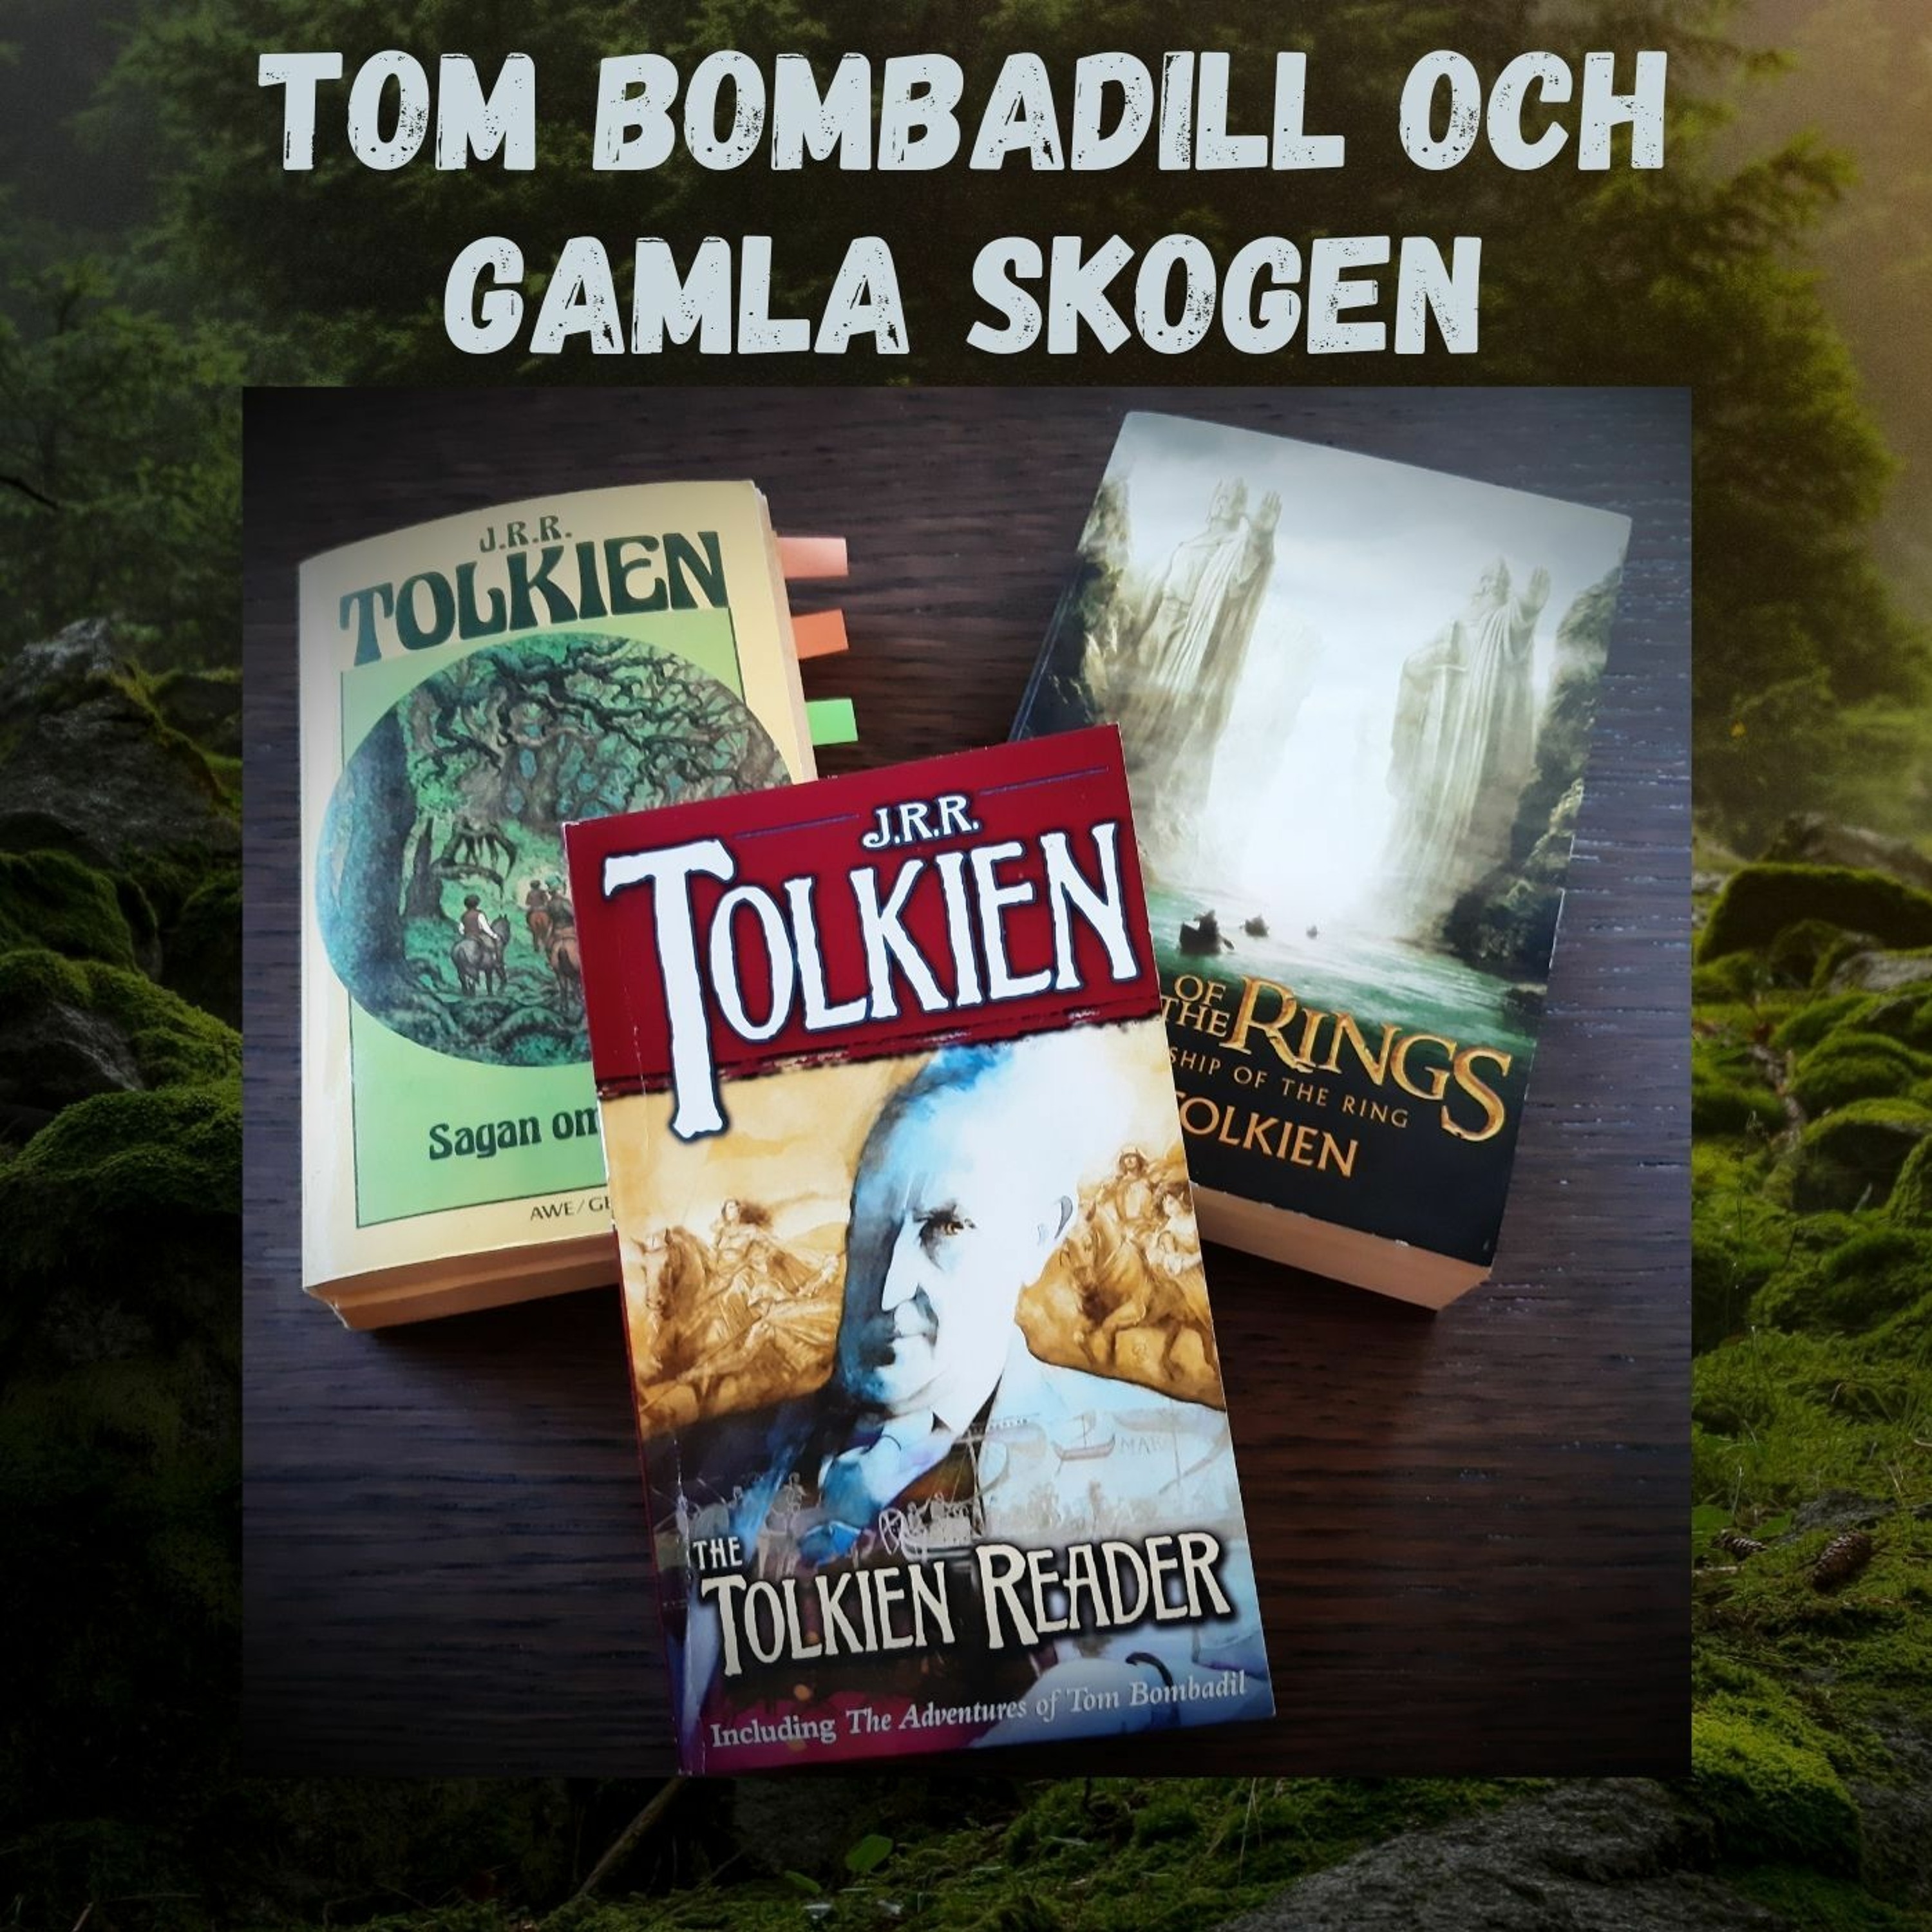 Tom Bombadill och Gamla skogen